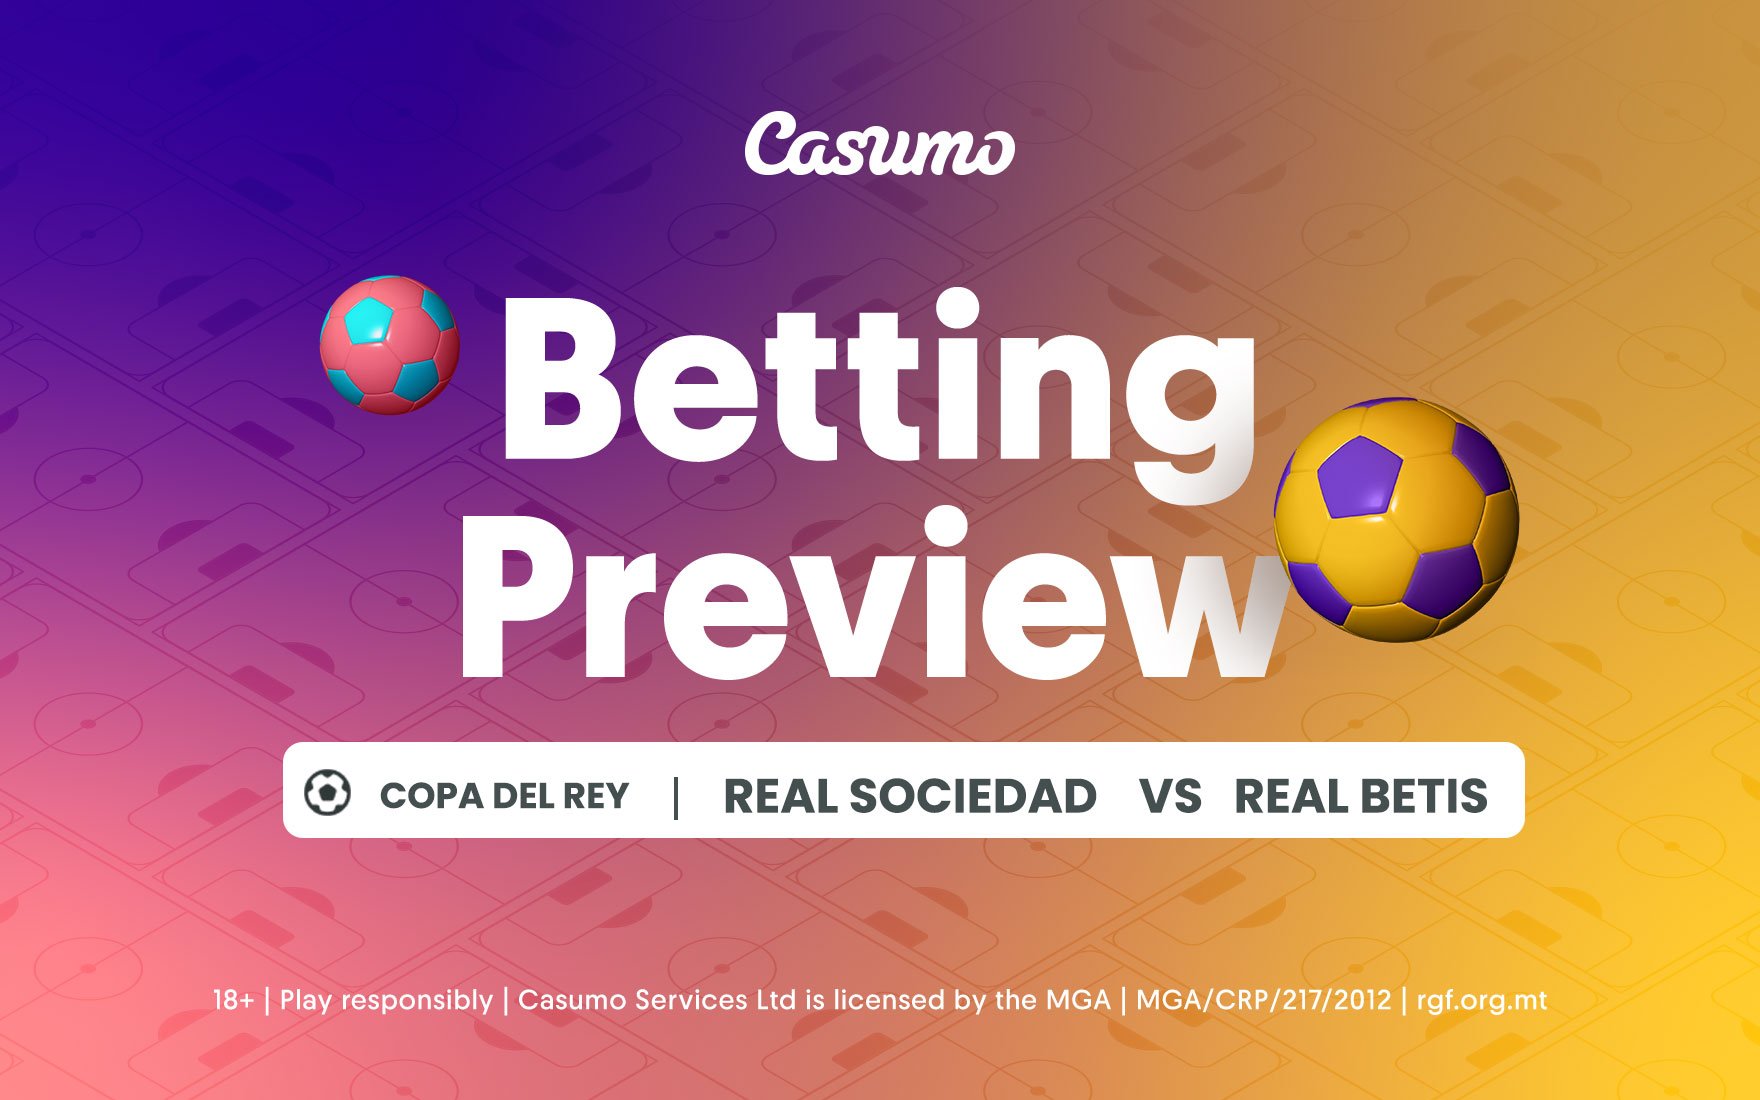 Real Sociedad vs Real Betis betting tips